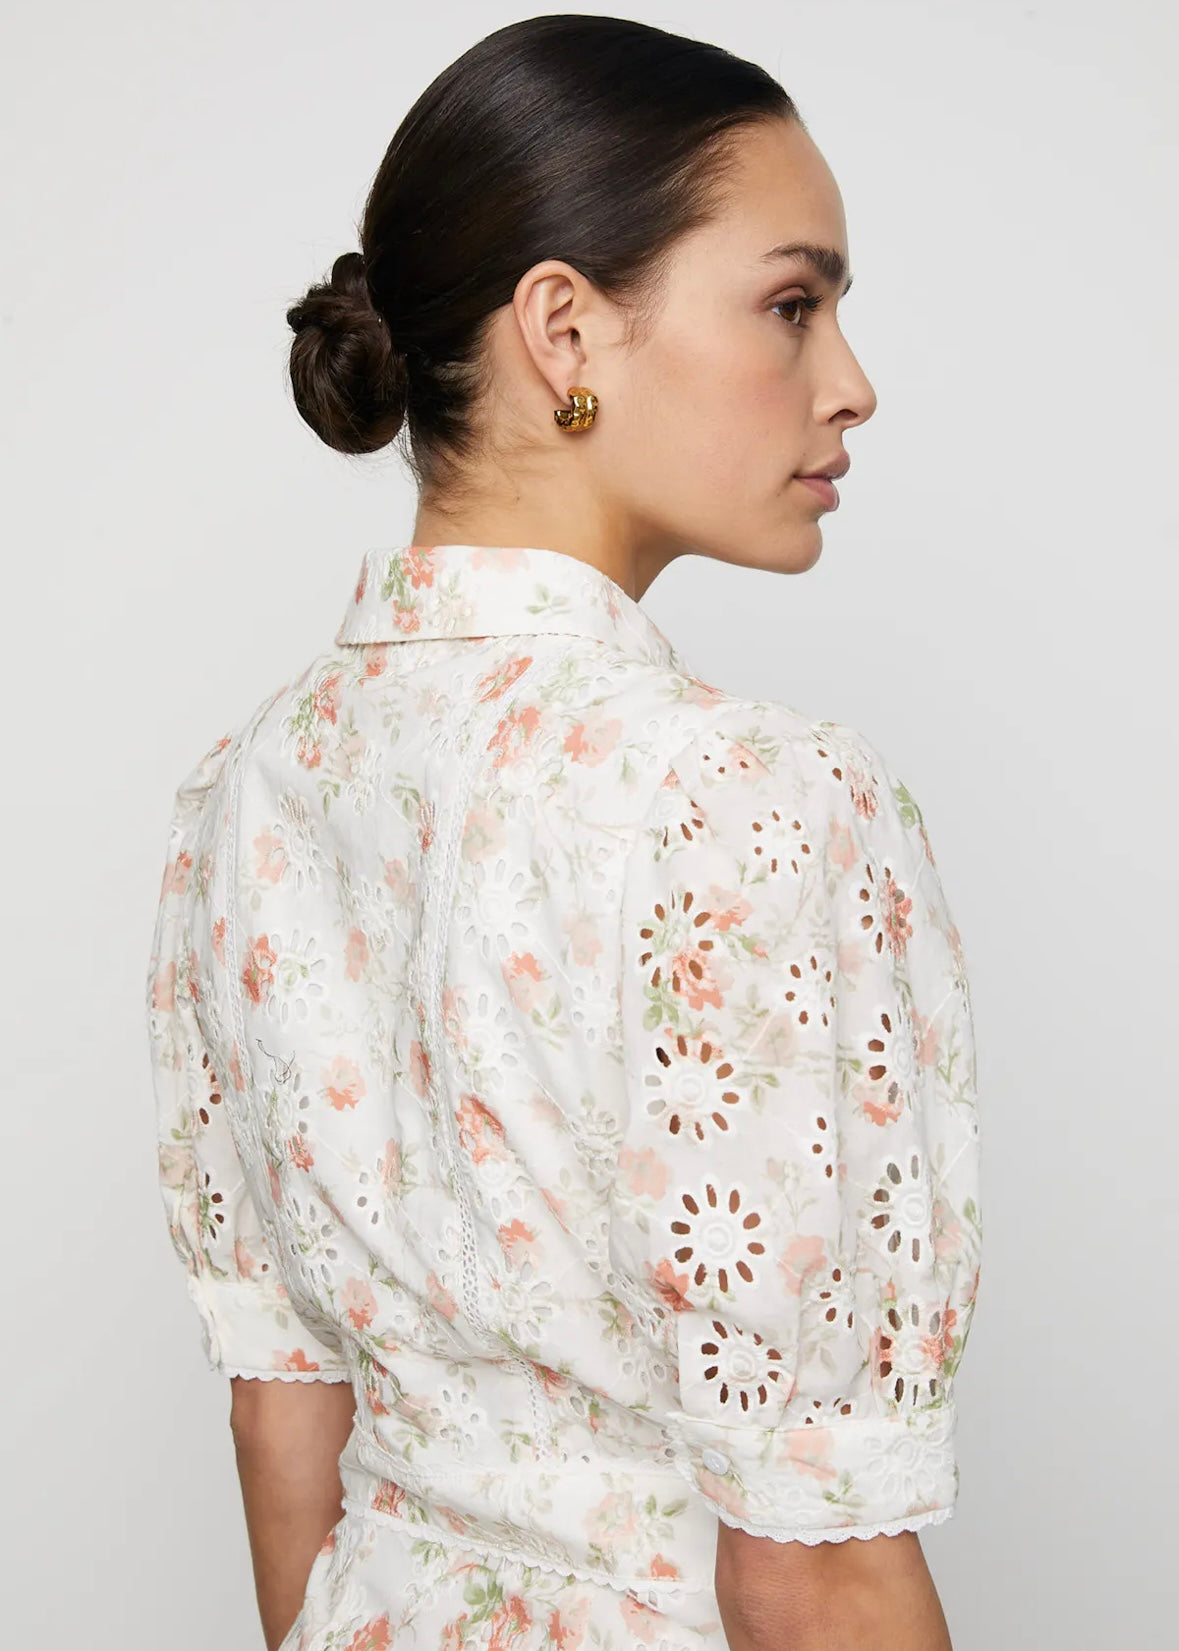 Camilla Pihl Juno dress - White Rose Print